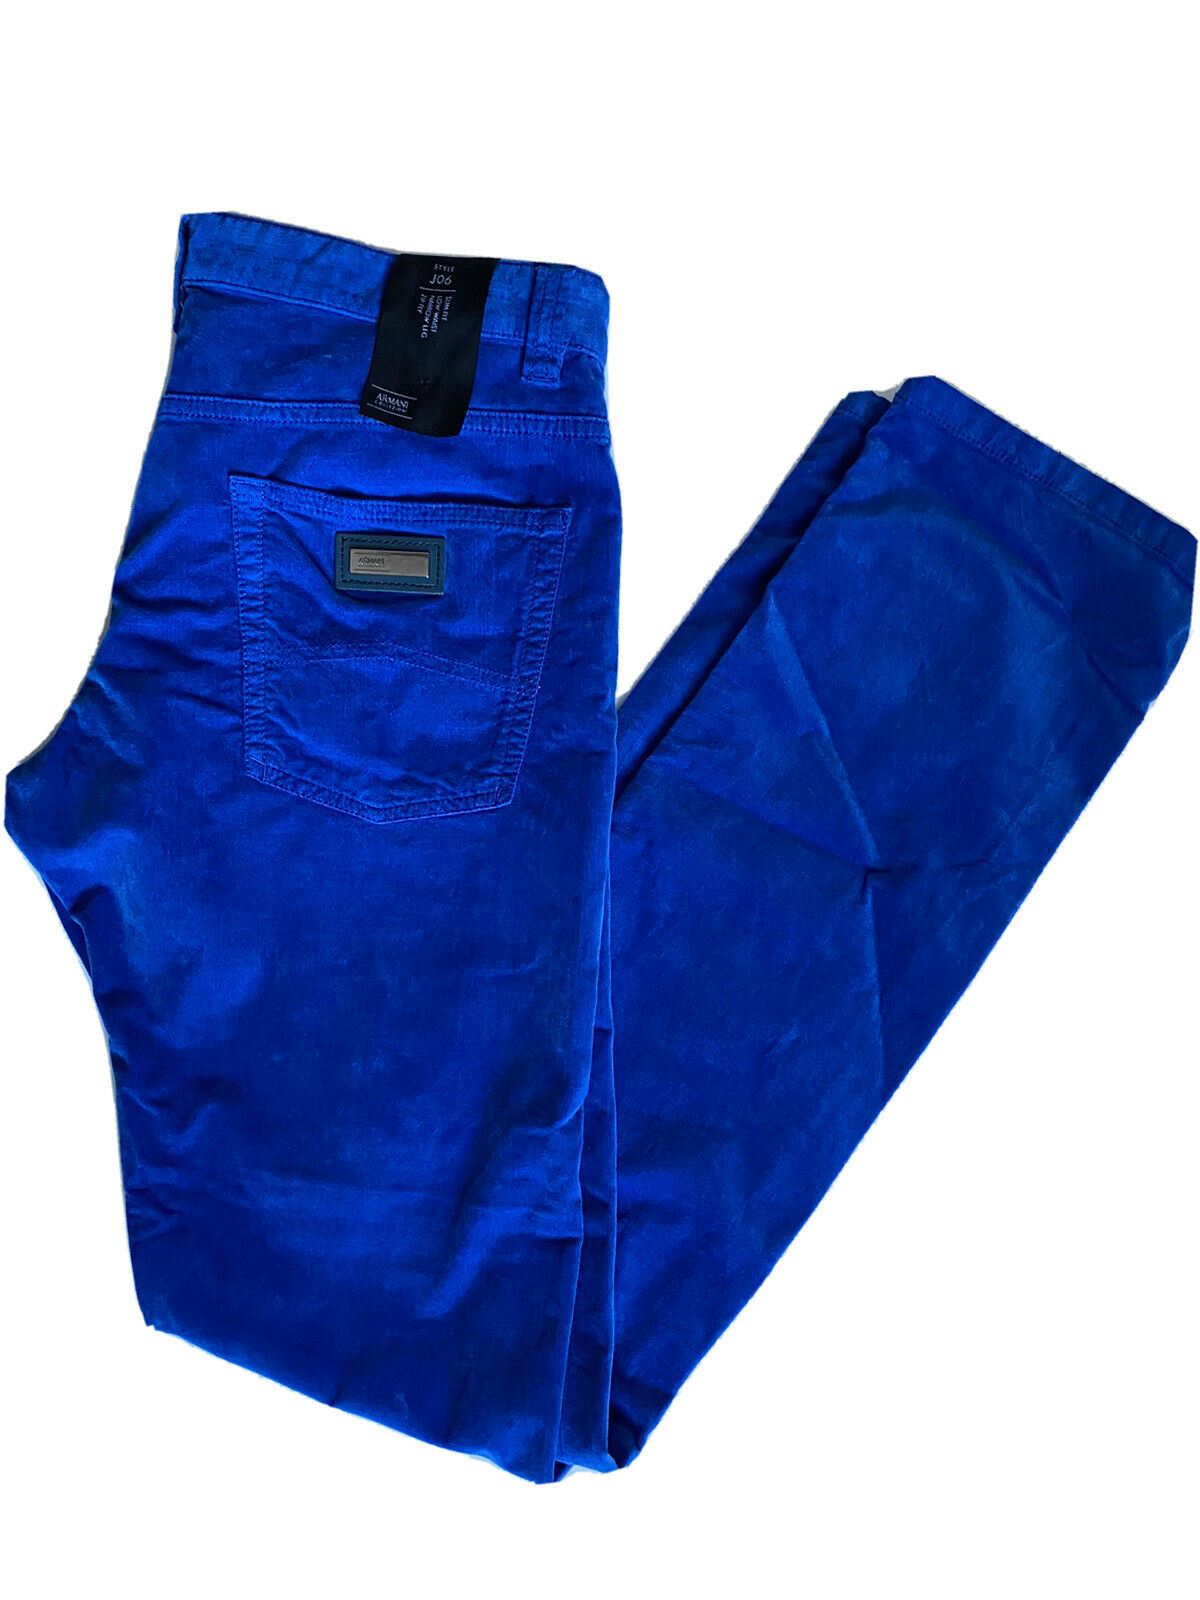 NWT $395 Armani Collezoni J06 Narrow Leg Slim Fit Blue Velvet Jeans SCPJ06 31 US